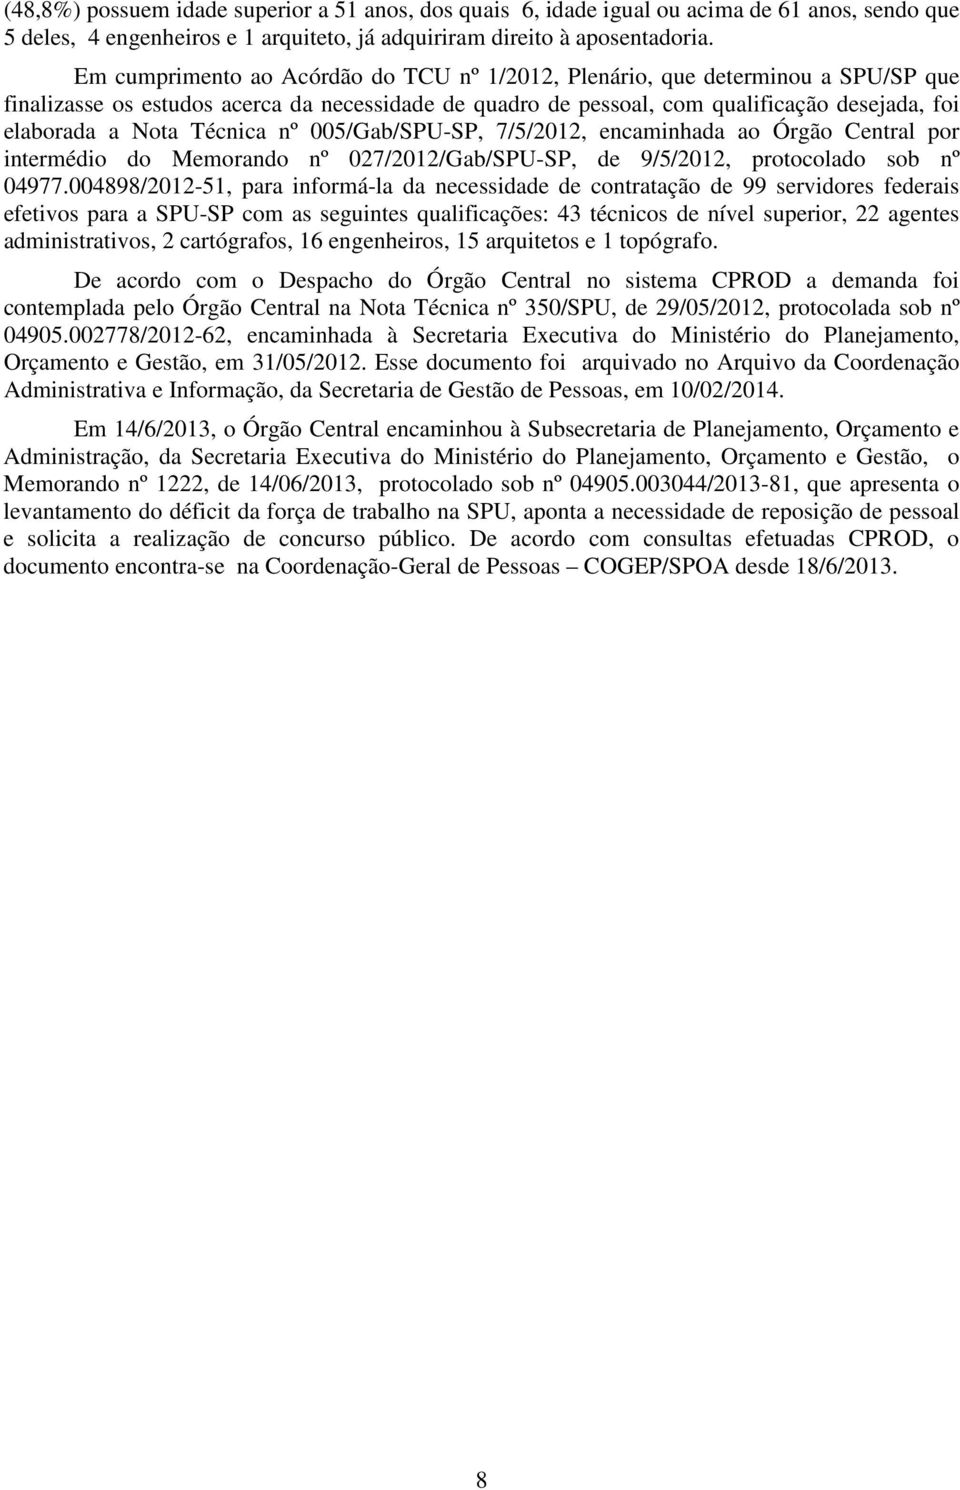 Técnica nº 005/Gab/SPU-SP, 7/5/2012, encaminhada ao Órgão Central por intermédio do Memorando nº 027/2012/Gab/SPU-SP, de 9/5/2012, protocolado sob nº 04977.